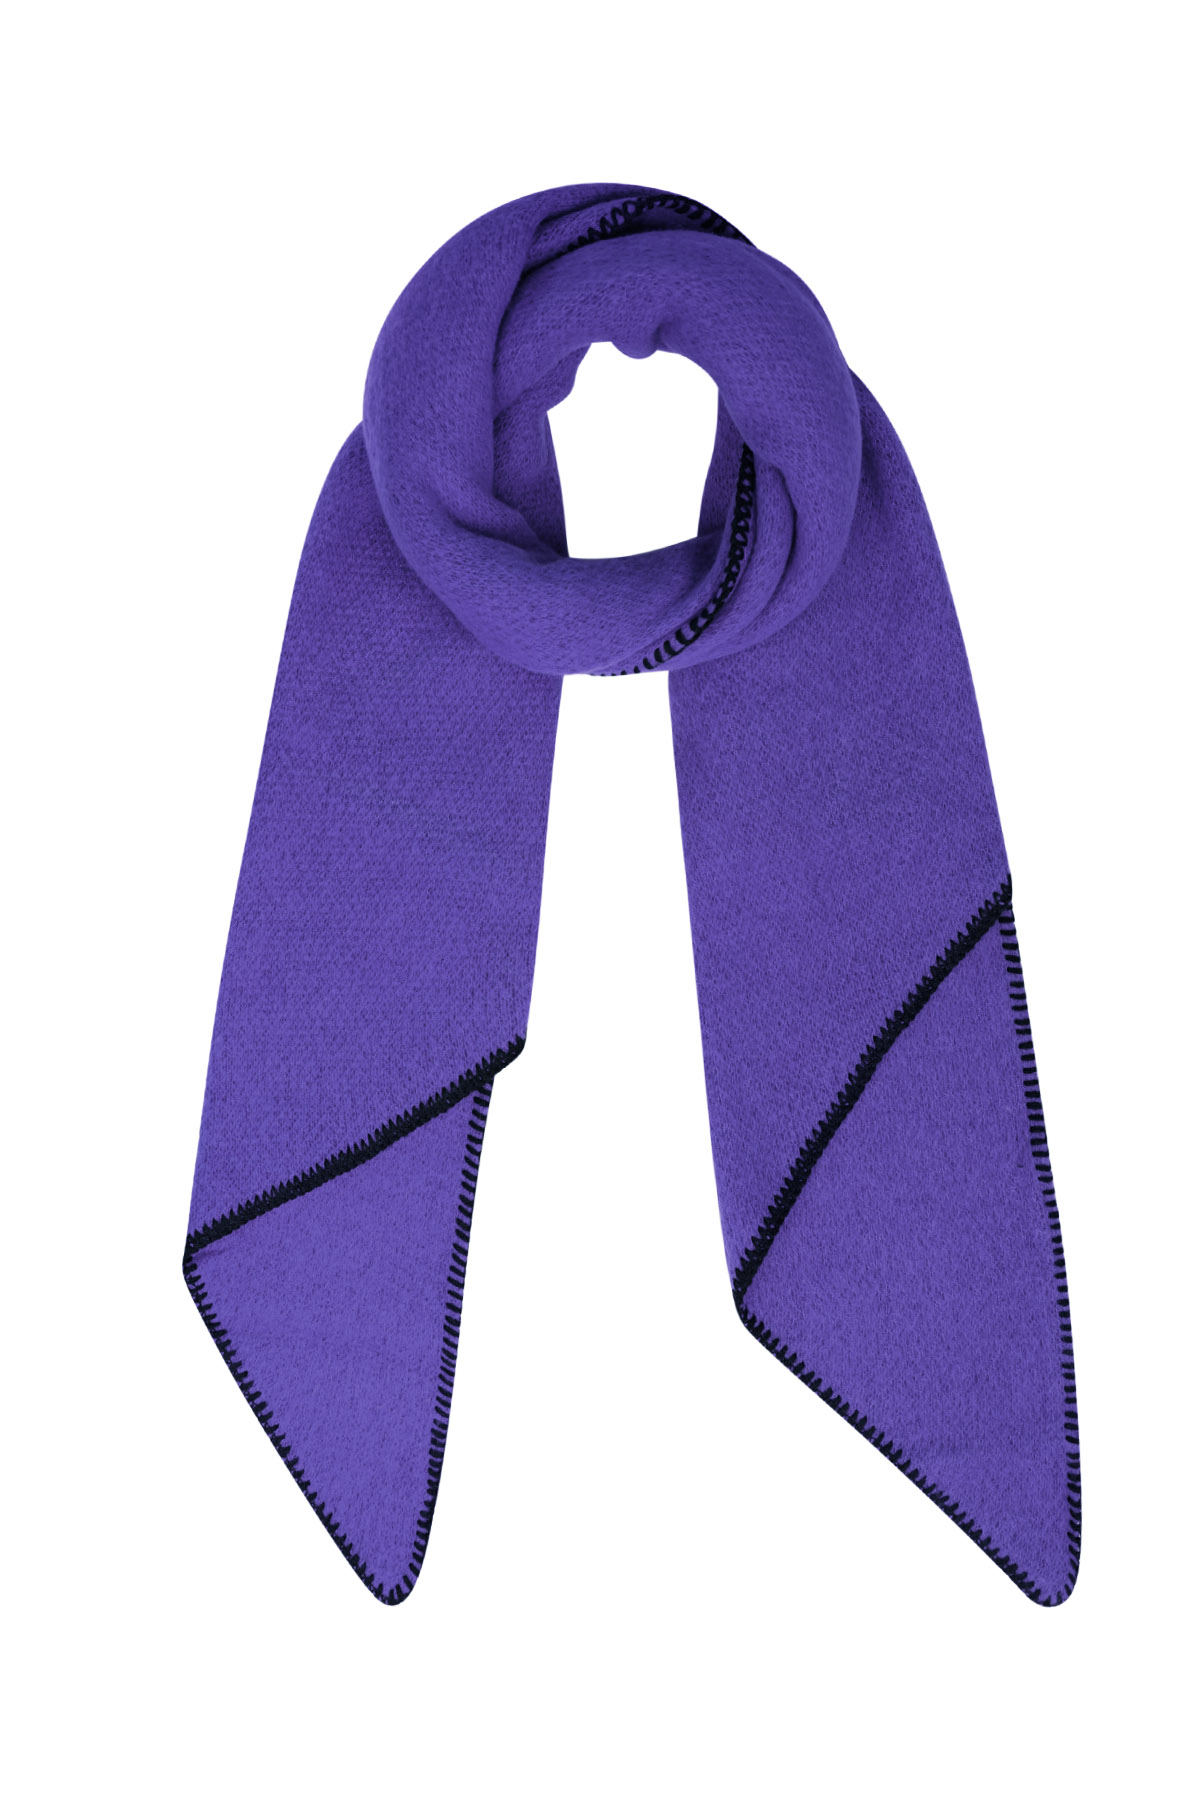 Bufanda de invierno monocolor con costuras negras - violeta